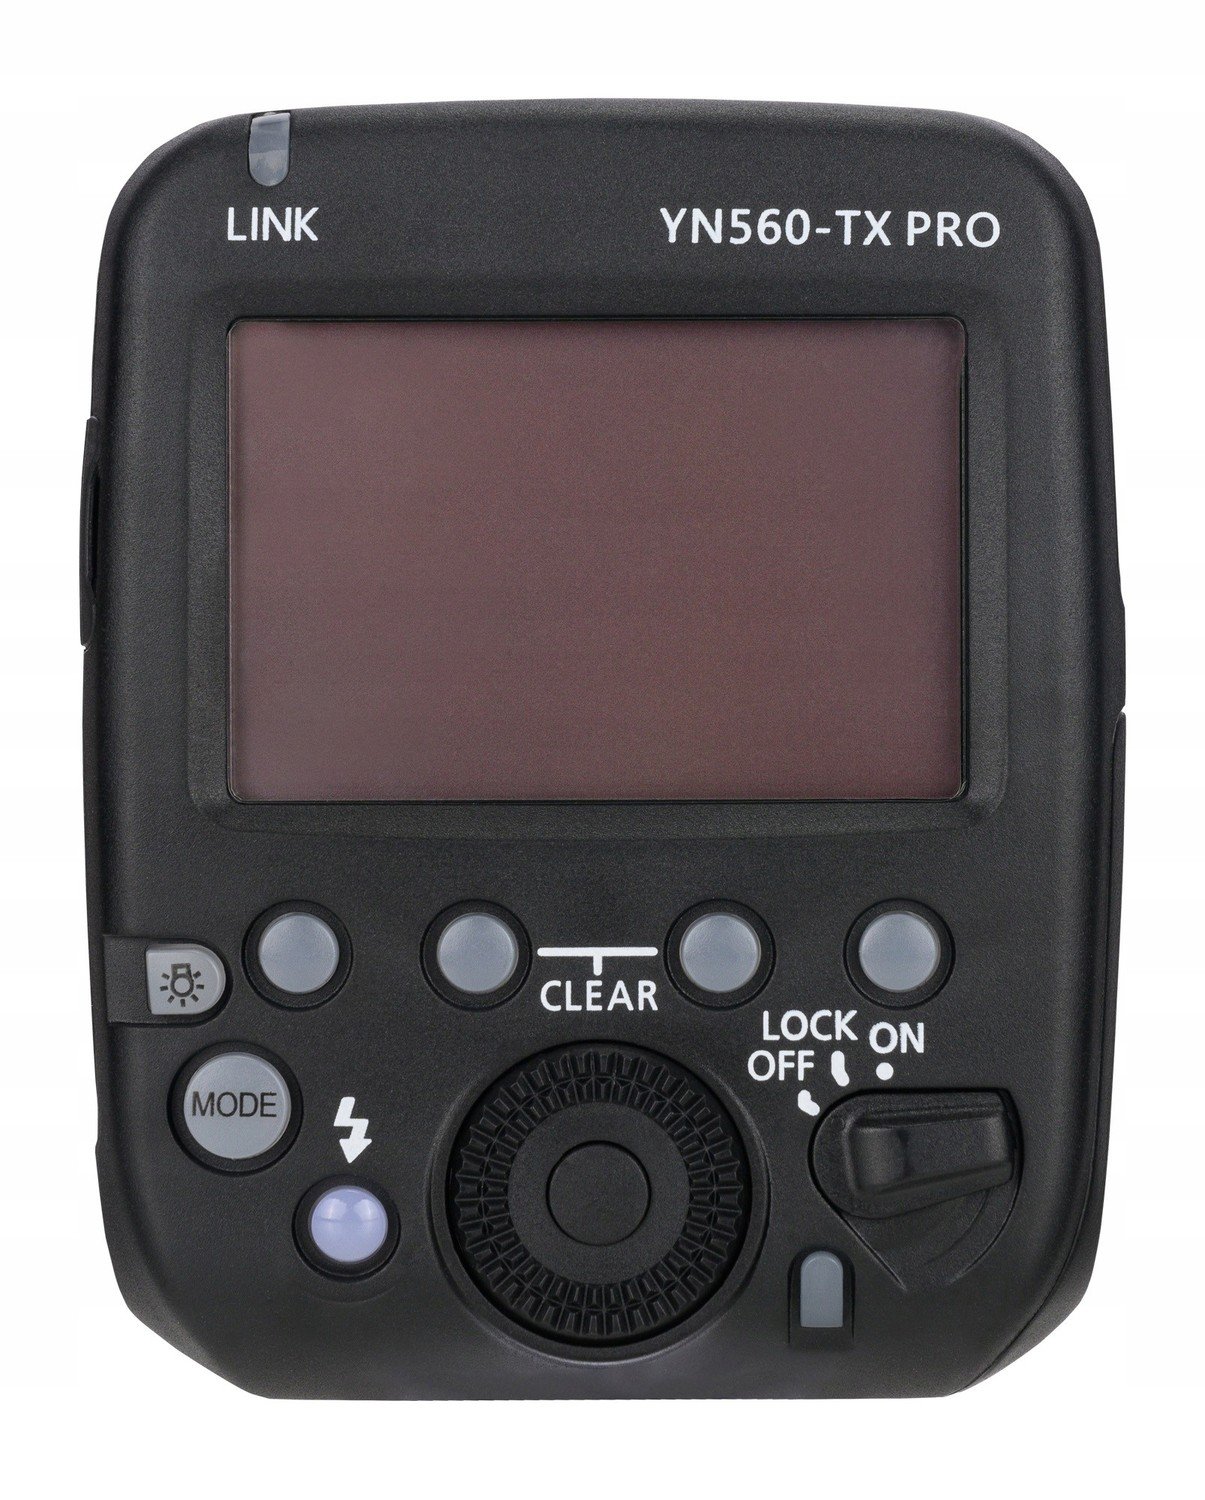 Rádiový spouštěč Yongnuo YN560-TX Pro pro Sony